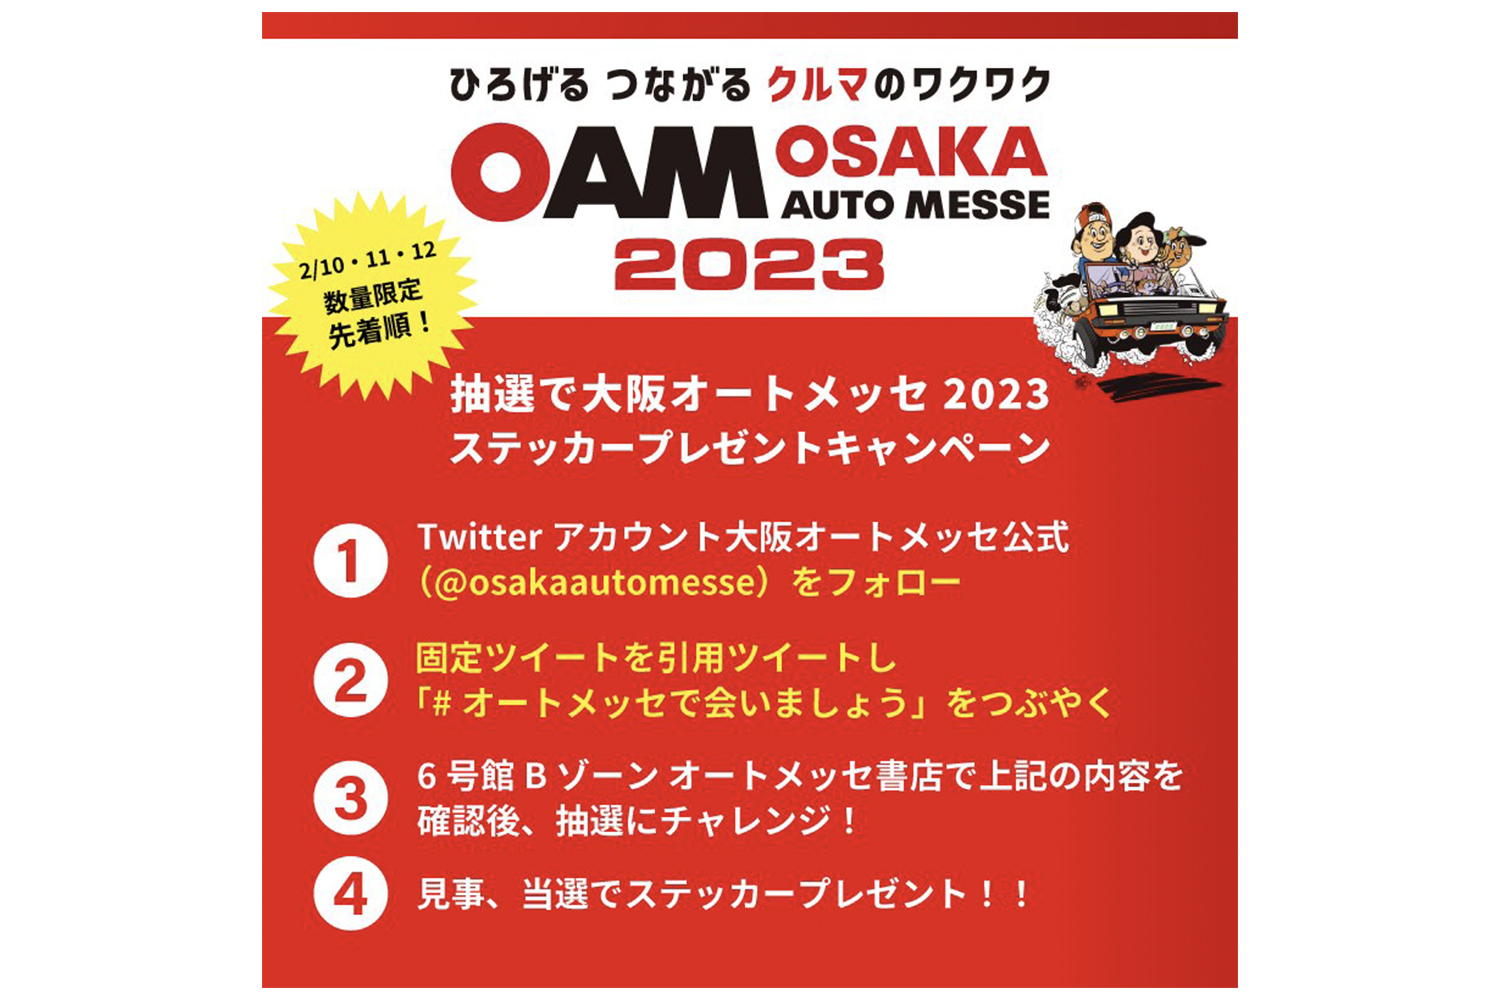 大阪オートメッセ2023にてオリジナルステッカープレゼントキャンペーンを開催